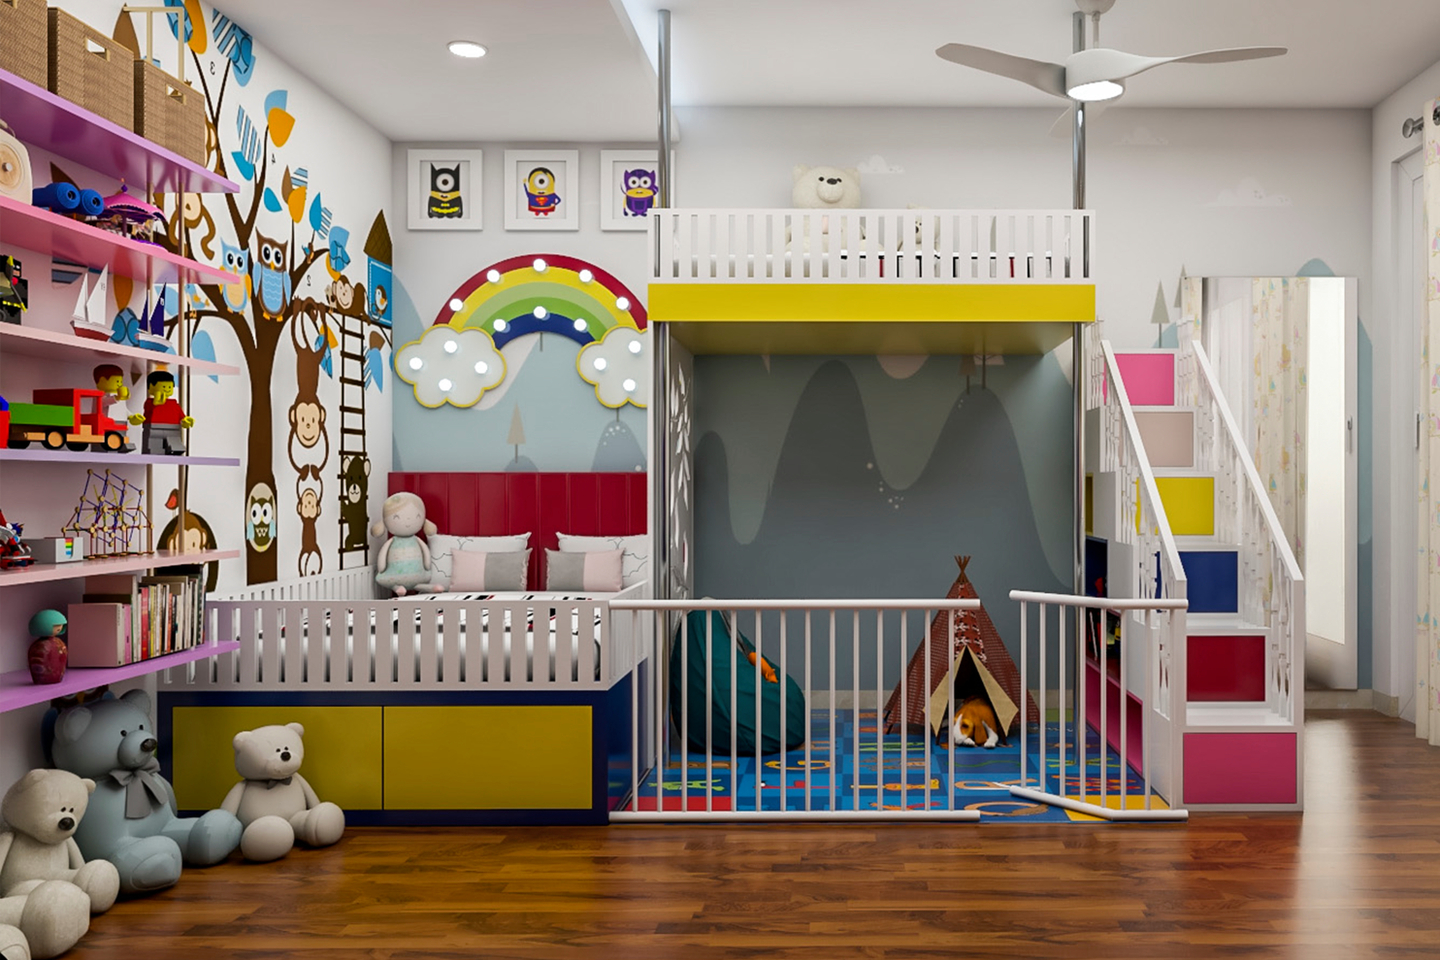 Spacious Kid's Bedroom Design With Rainbow Theme | Livspace